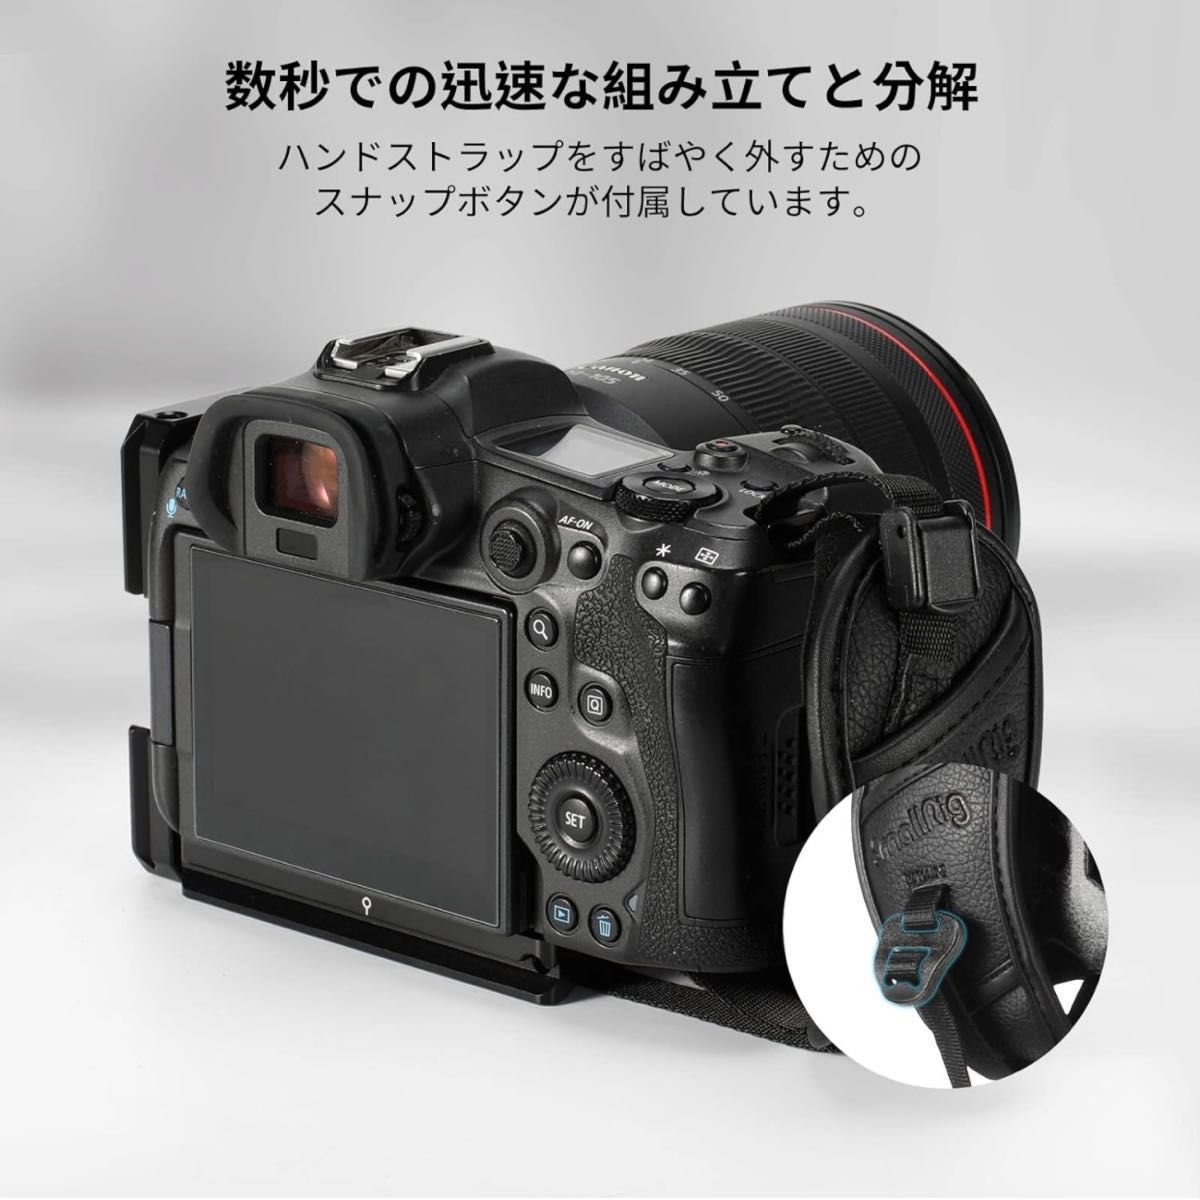 新品 未使用 未開封 [SMALLRIG] リストストラップ ハンドストラップ カメラグリップ用-3848